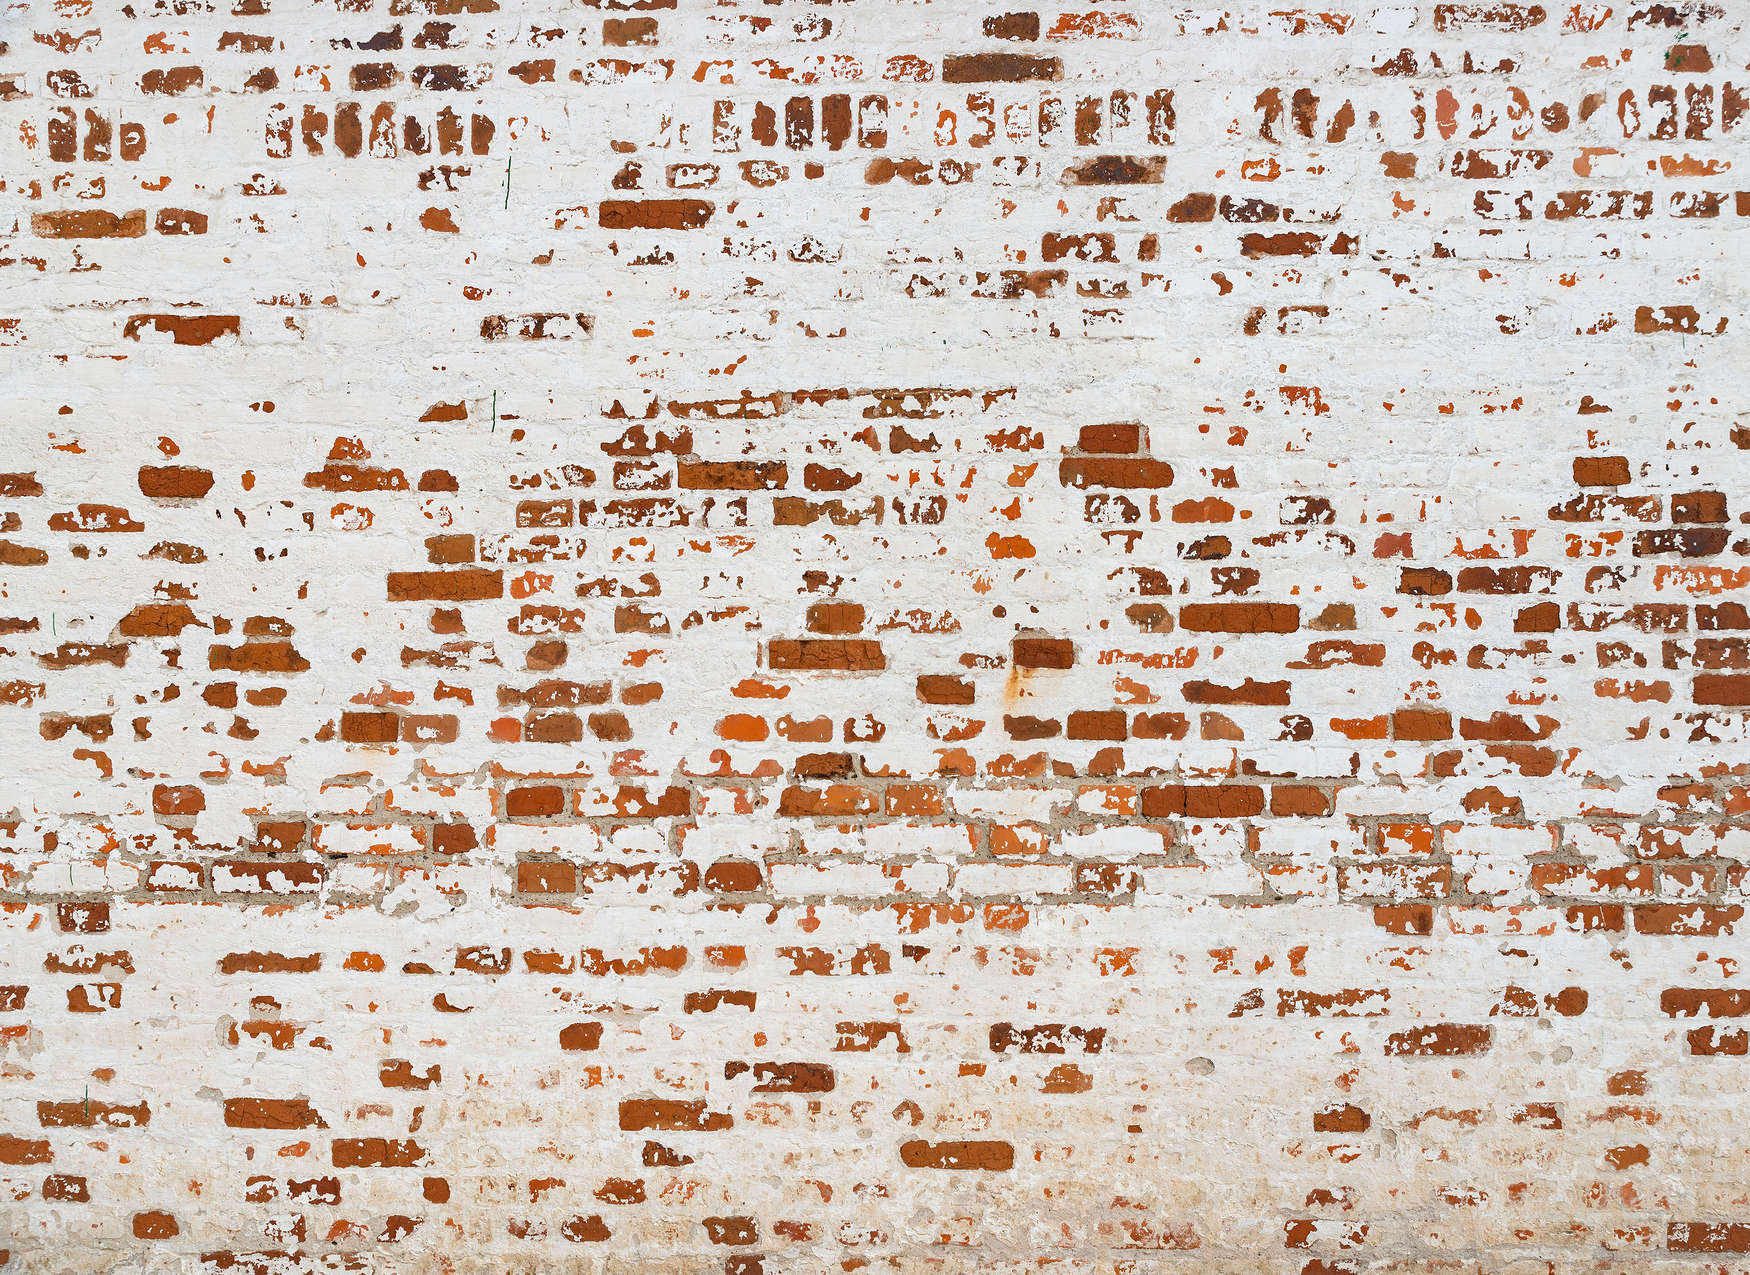             Fototapete Backsteinmauer mit 3D Effekt – Weiß, Braun, Rot
        